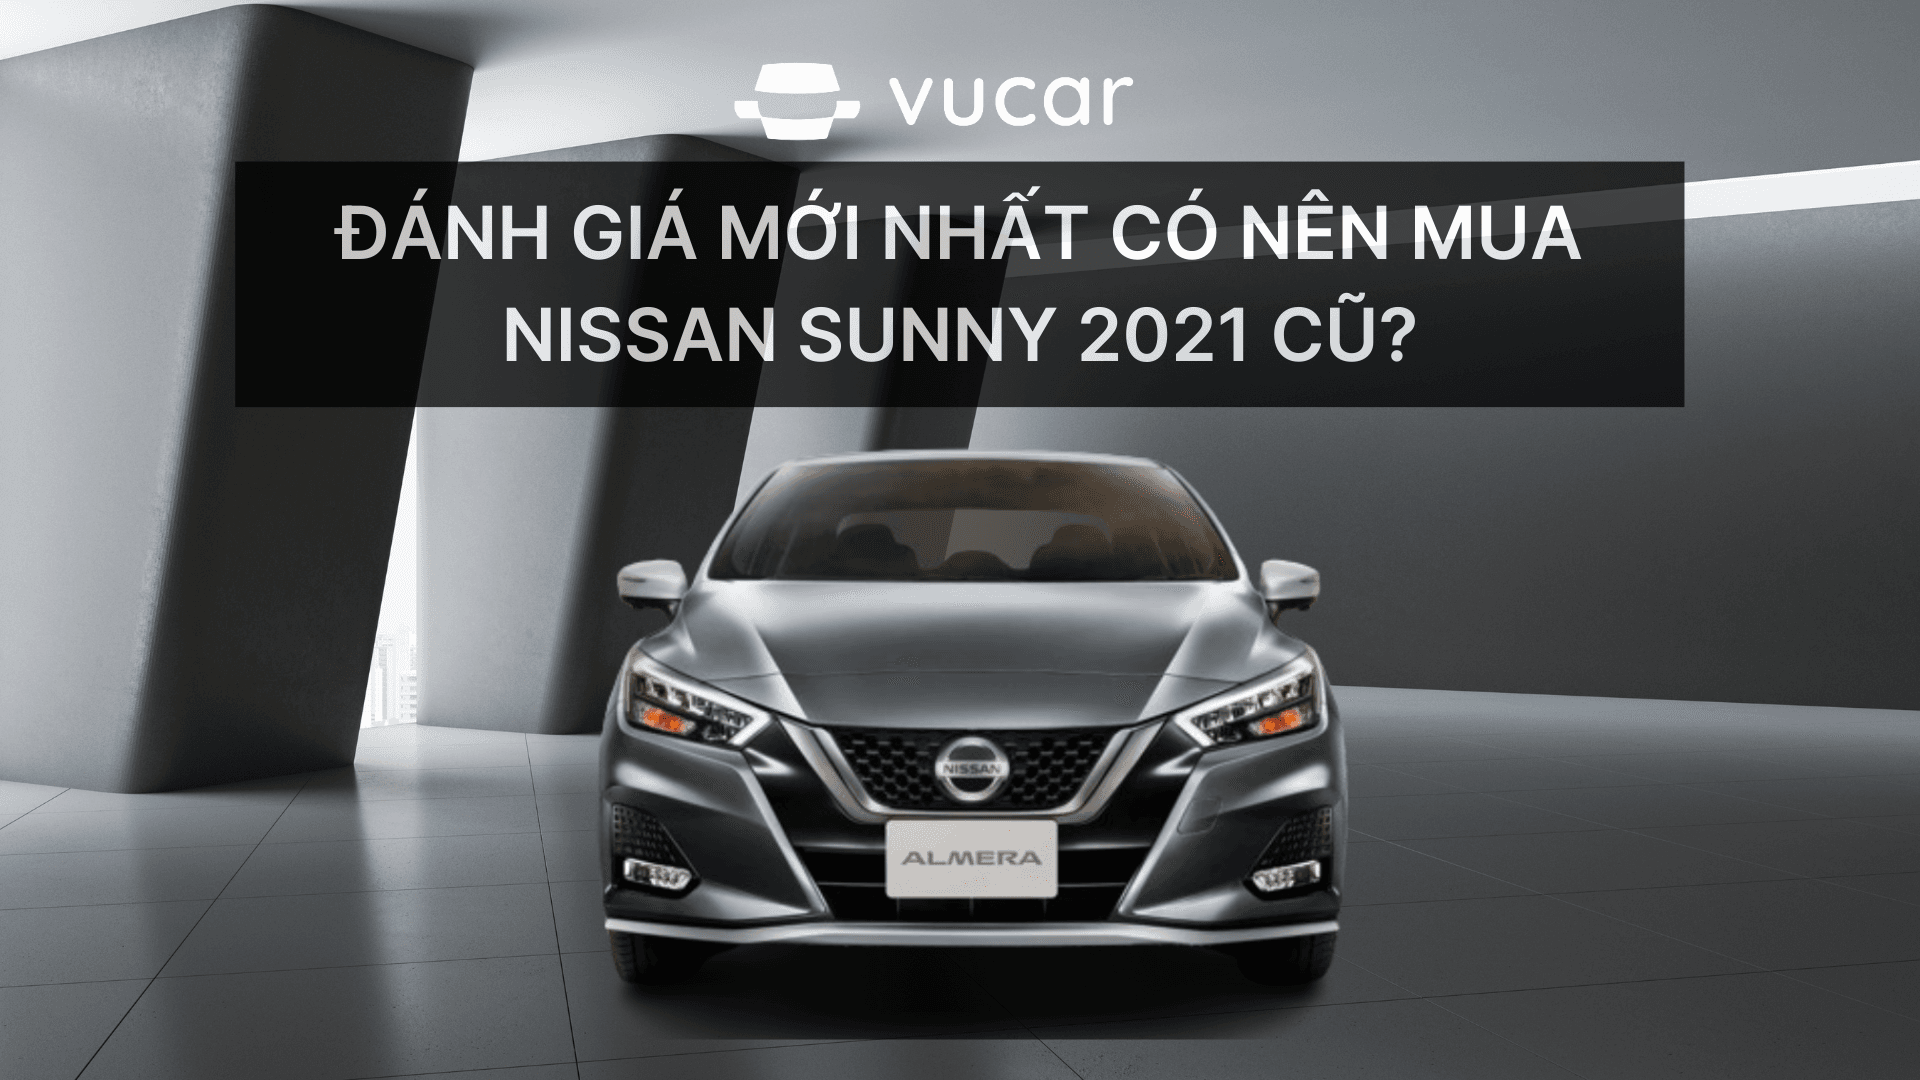 Đánh giá mới nhất có nên mua Nissan Sunny 2021 cũ?